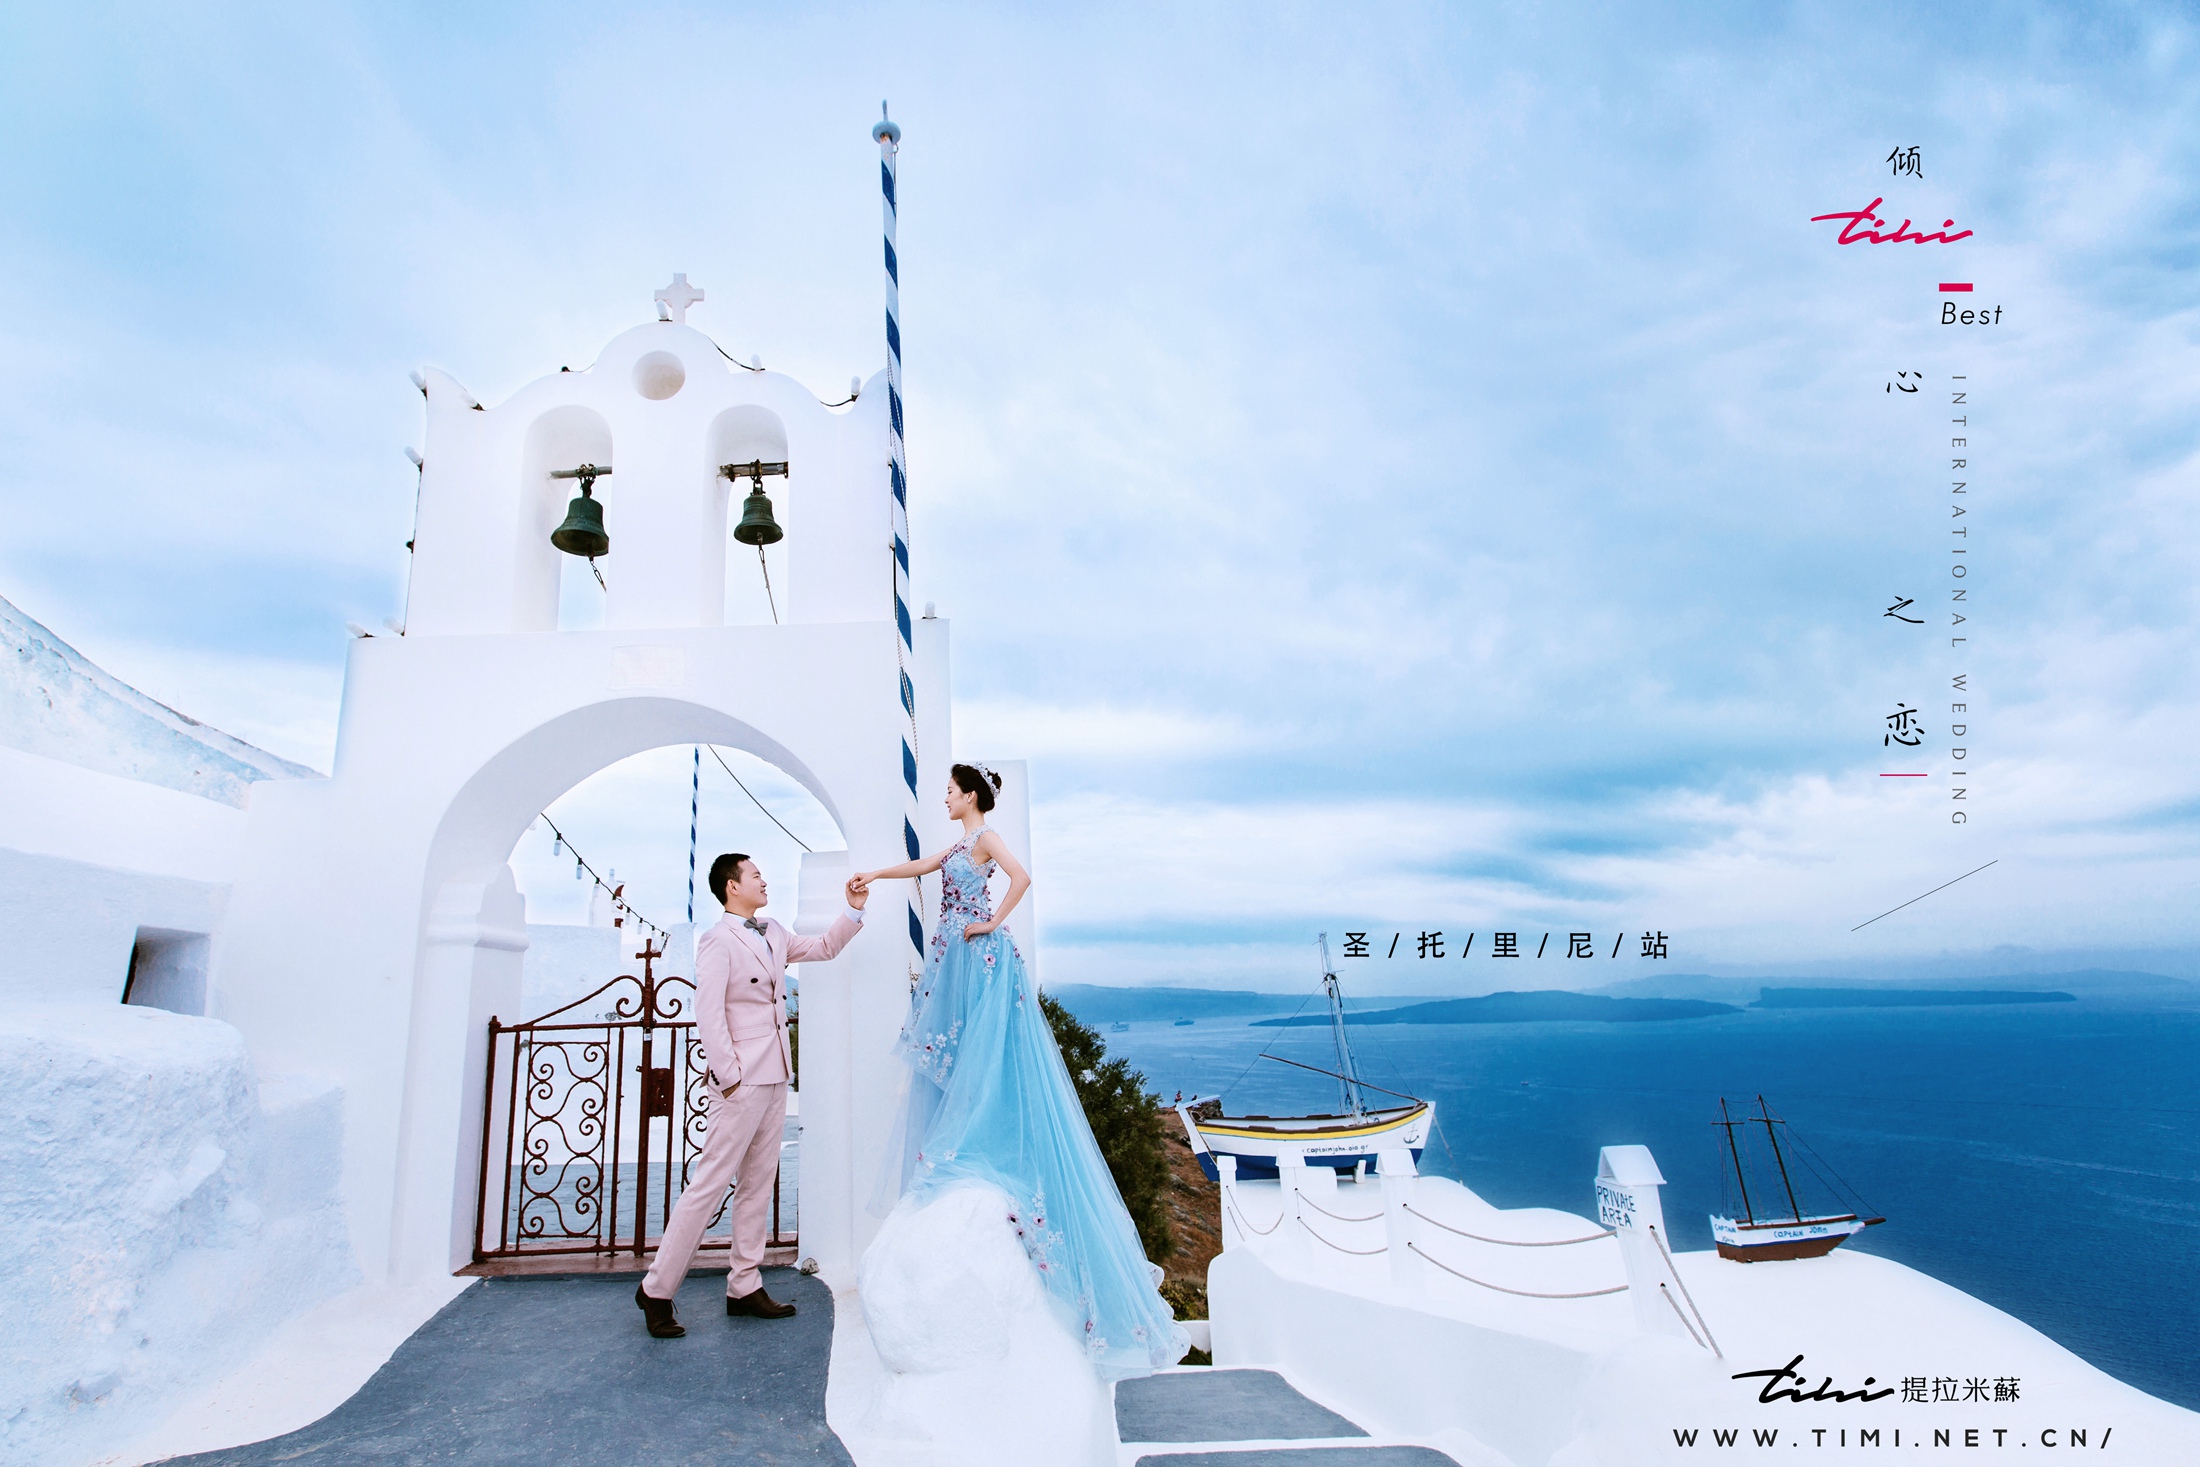 圣托里尼婚纱照,蓝白色的浪漫